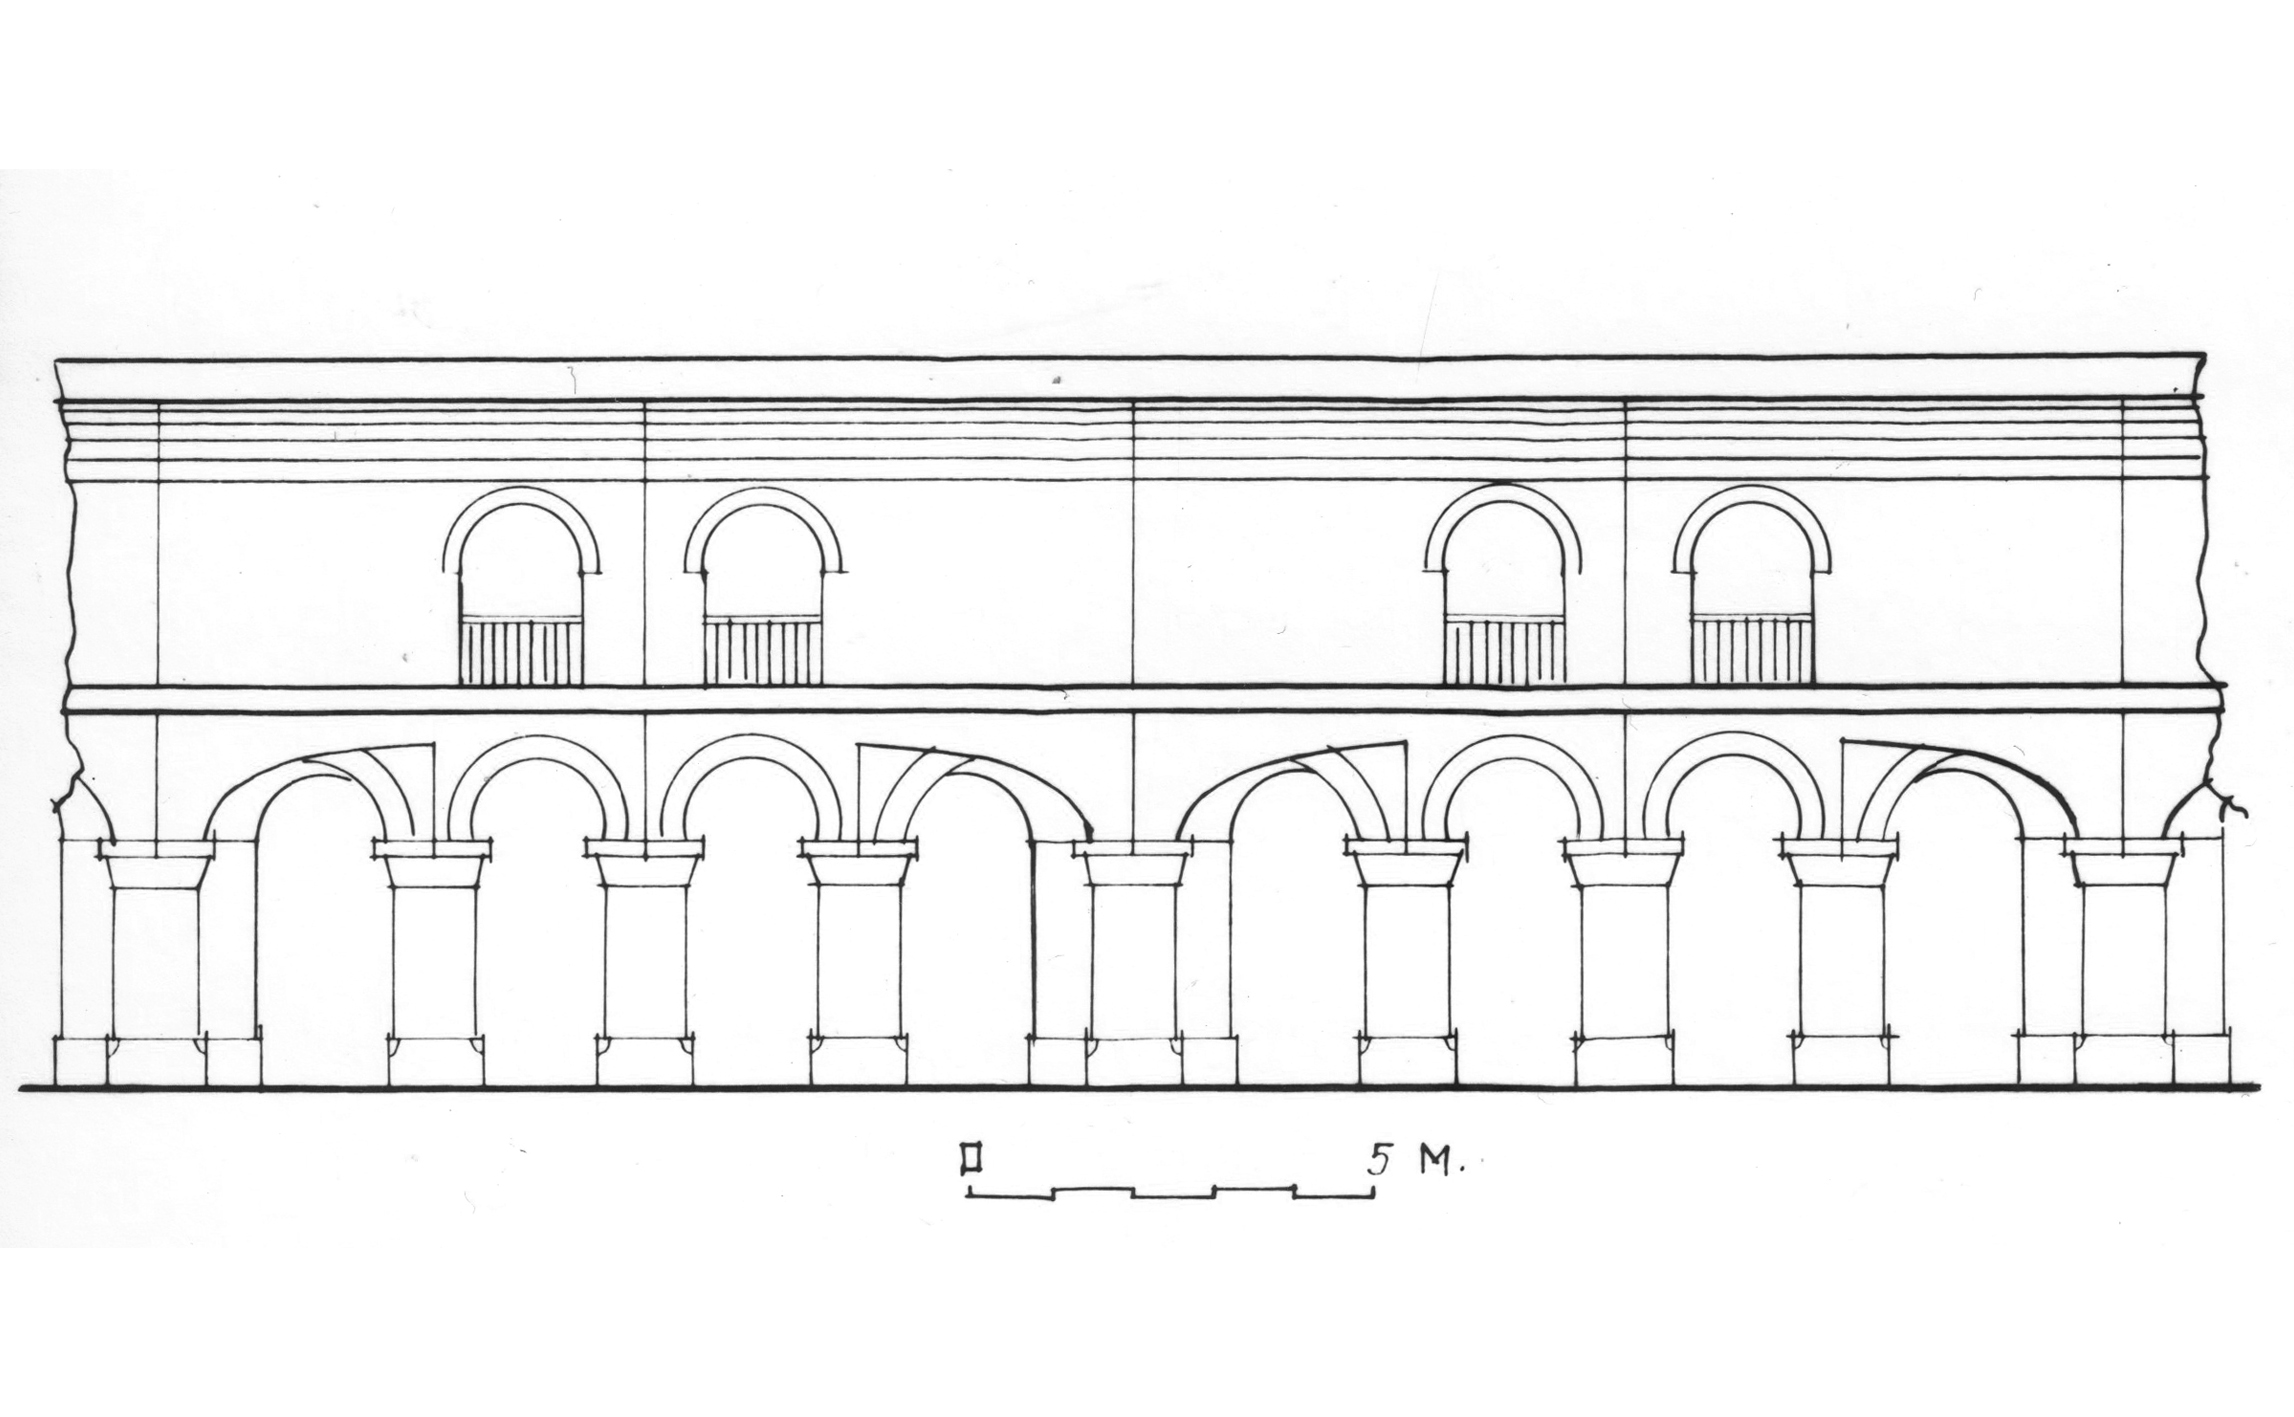 Շրջանց սրահի կտրվածքը տաճարի առաջին աստիճանի սահմաններում (վերակազմություն)